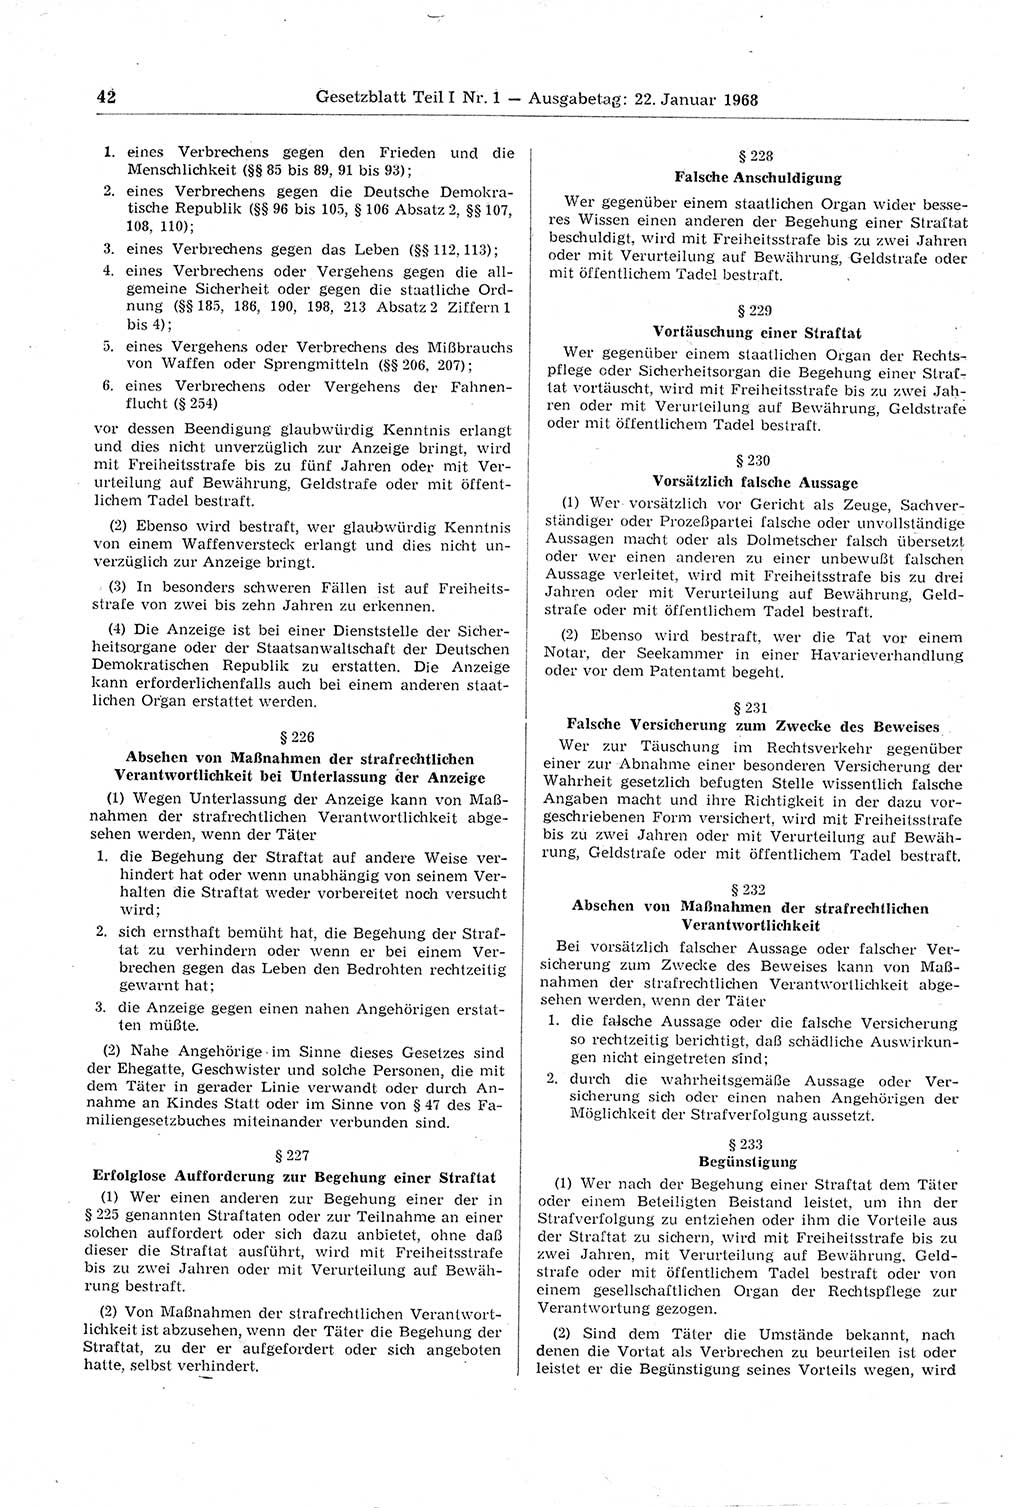 Gesetzblatt (GBl.) der Deutschen Demokratischen Republik (DDR) Teil Ⅰ 1968, Seite 42 (GBl. DDR Ⅰ 1968, S. 42)